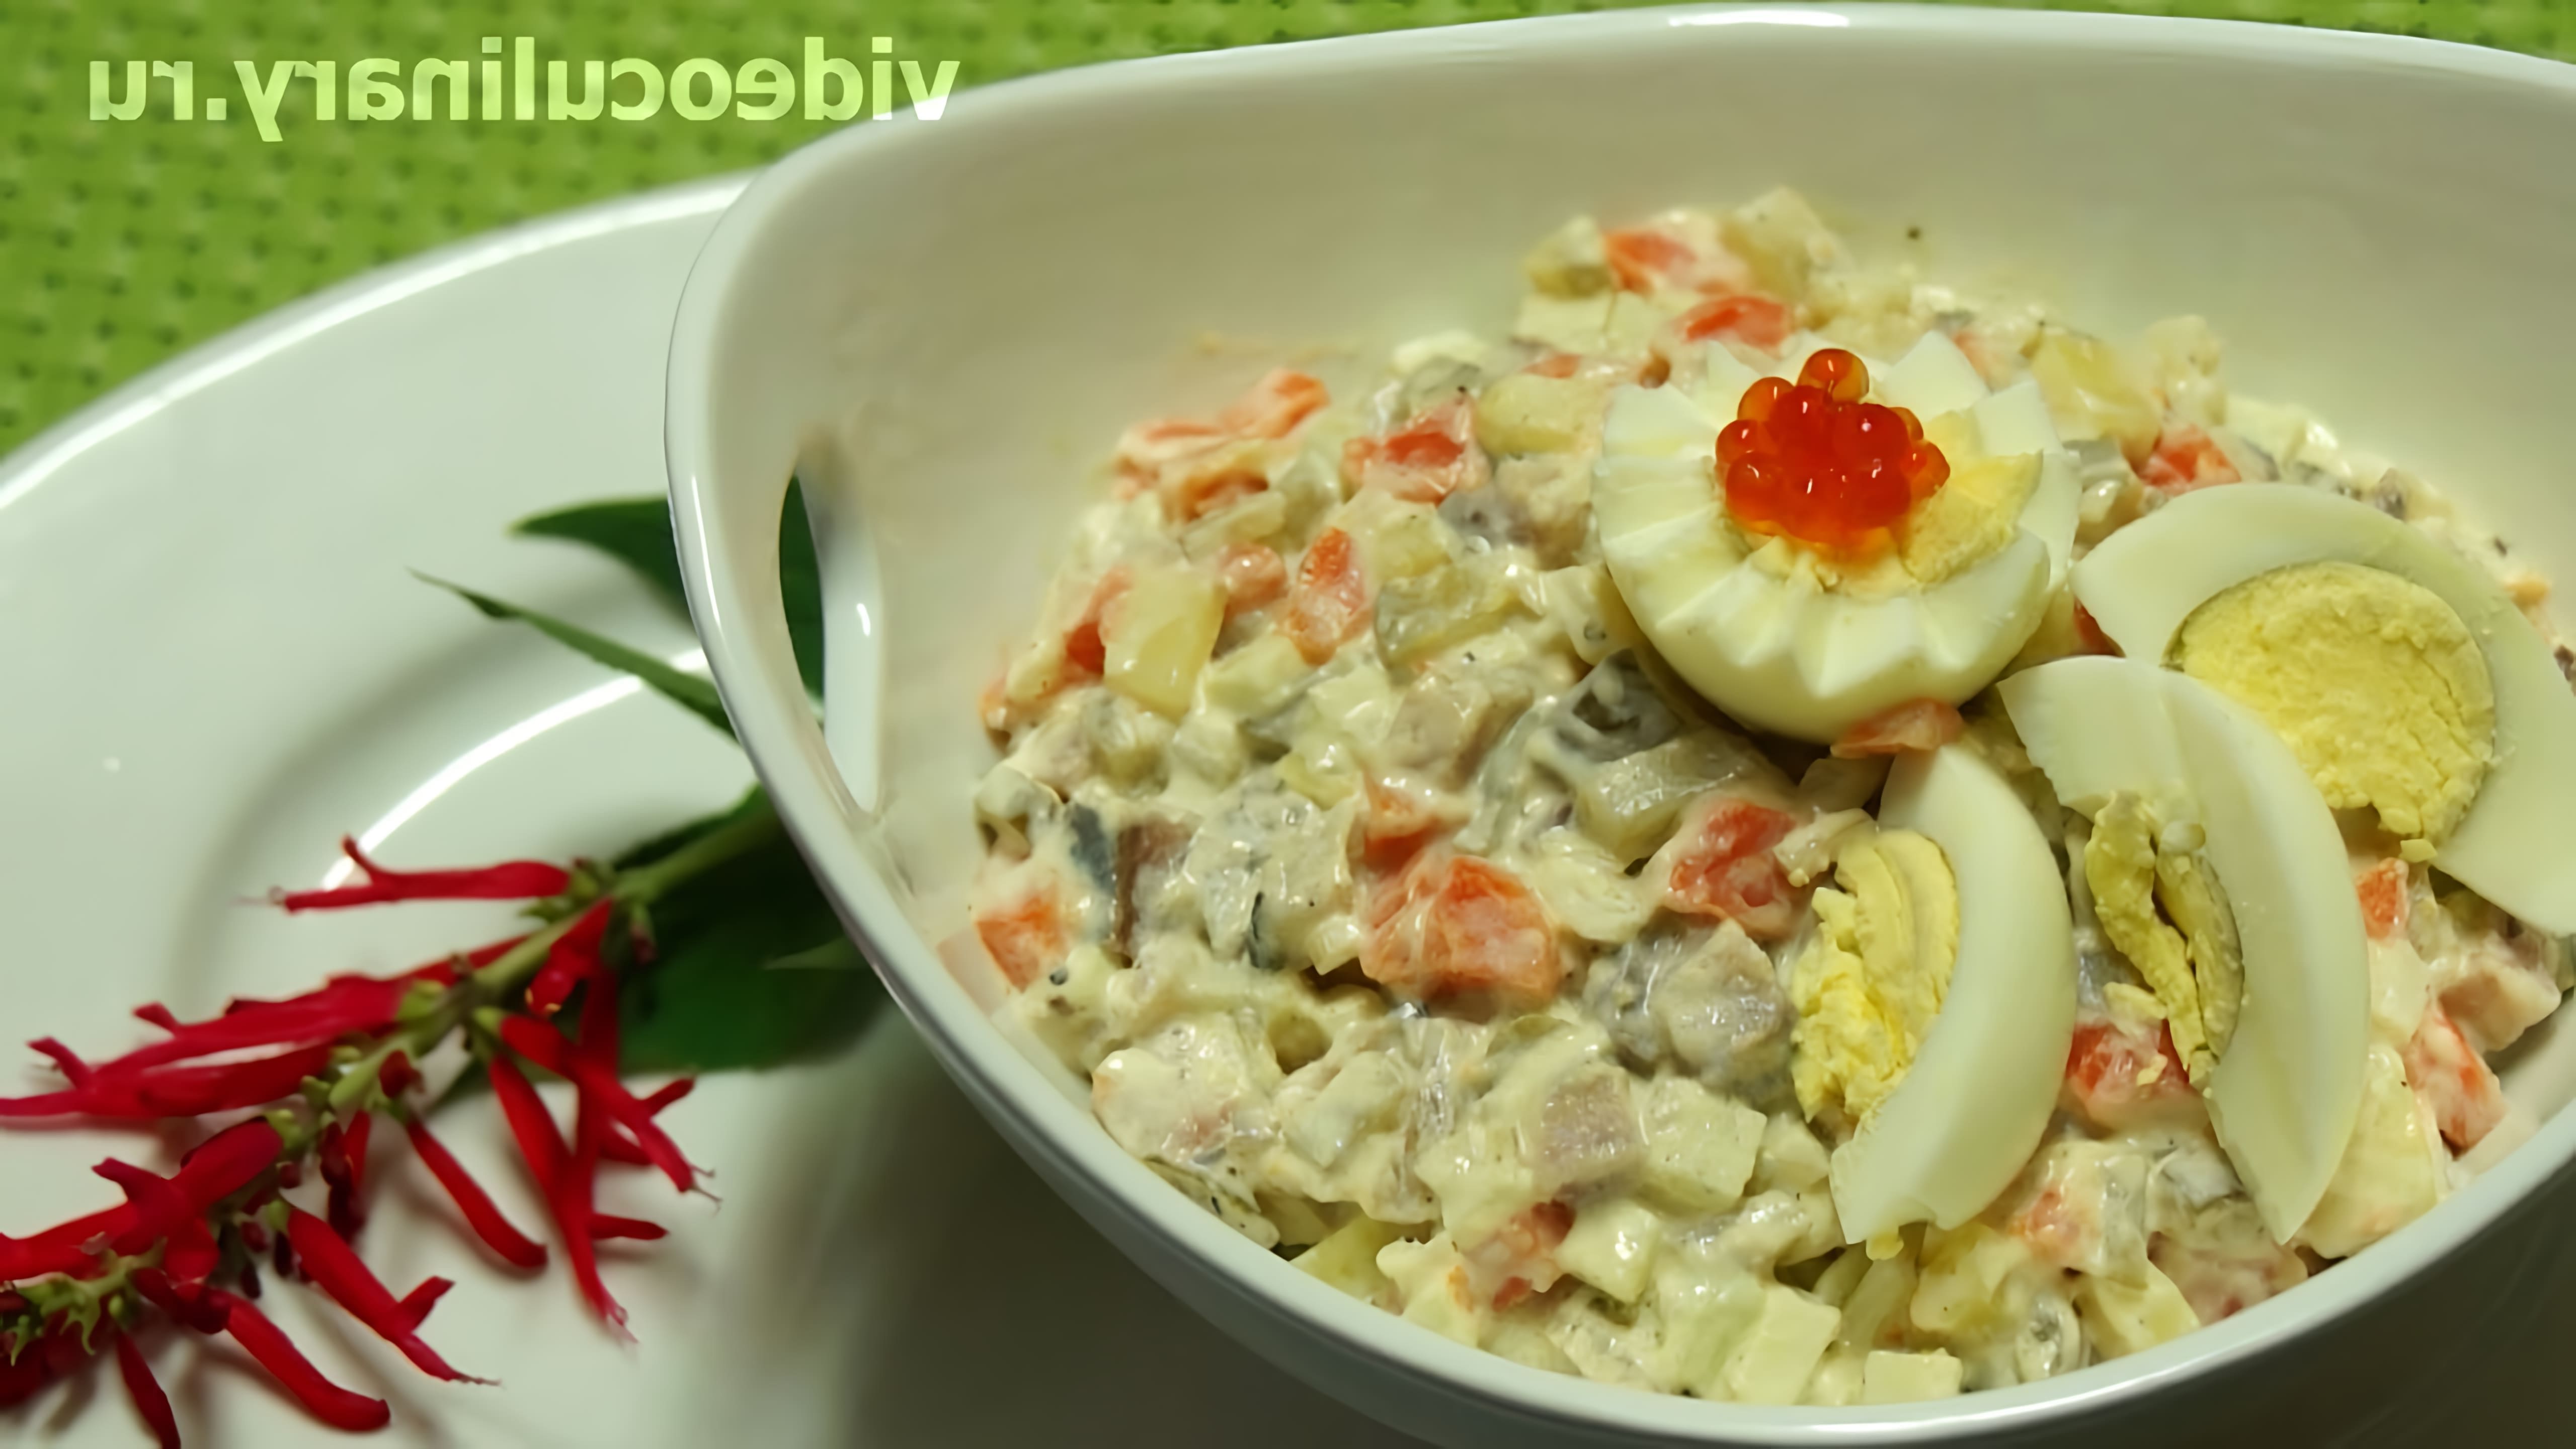 В этом видео демонстрируется рецепт салата с сельдью по-русски от Бабушки Эммы